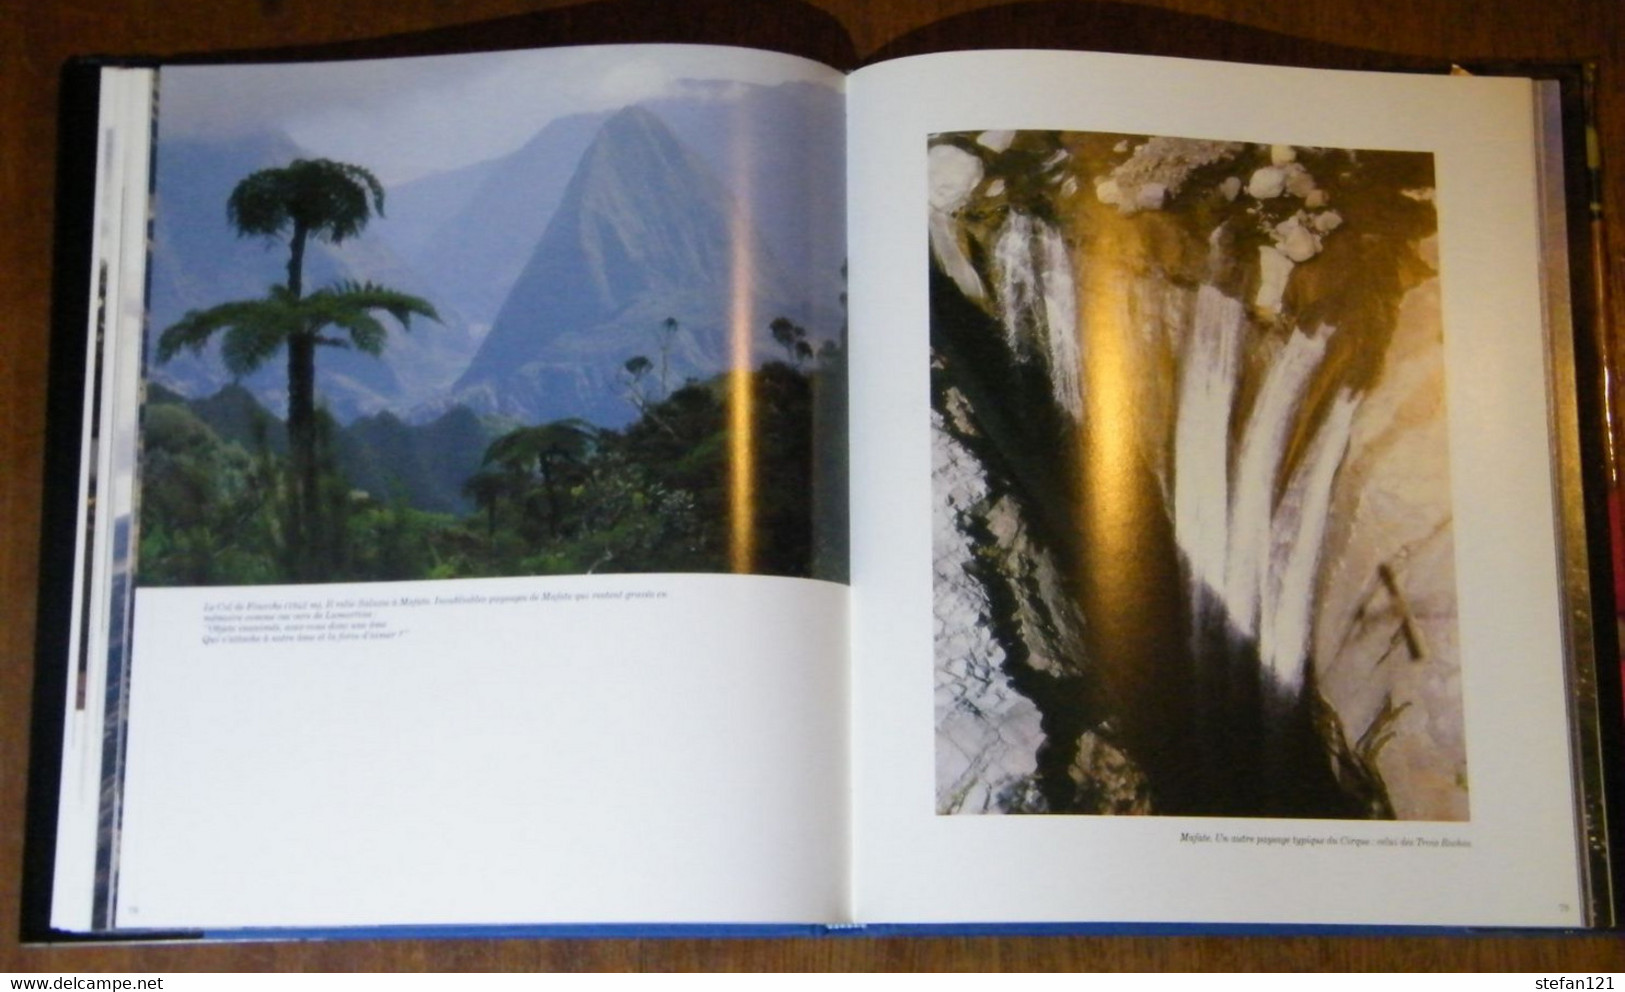 La Réunion Fruit D'une Passion - Serge Gélabert - 1988 - 130 Pages 31 X 26,8 Cm - Outre-Mer